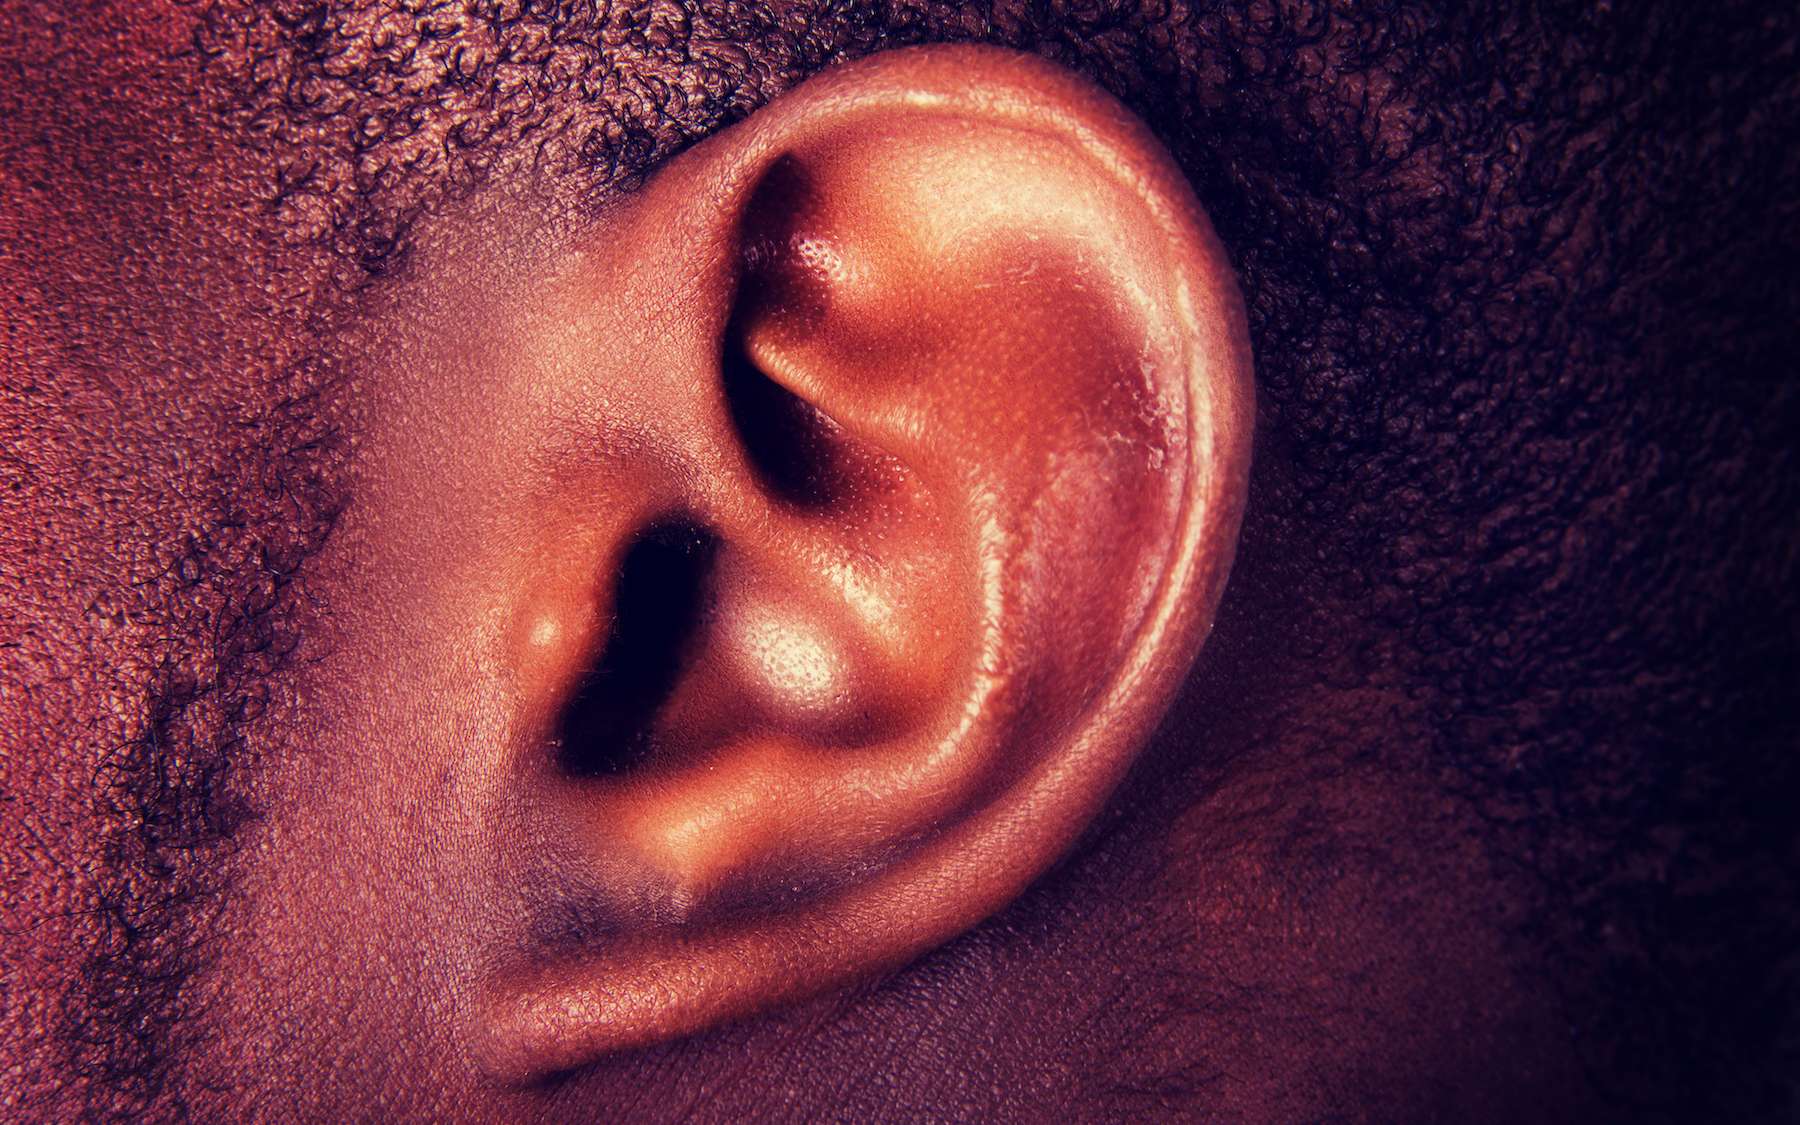 Covid-19 : un homme devient subitement sourd d’une oreille après une infection au coronavirus